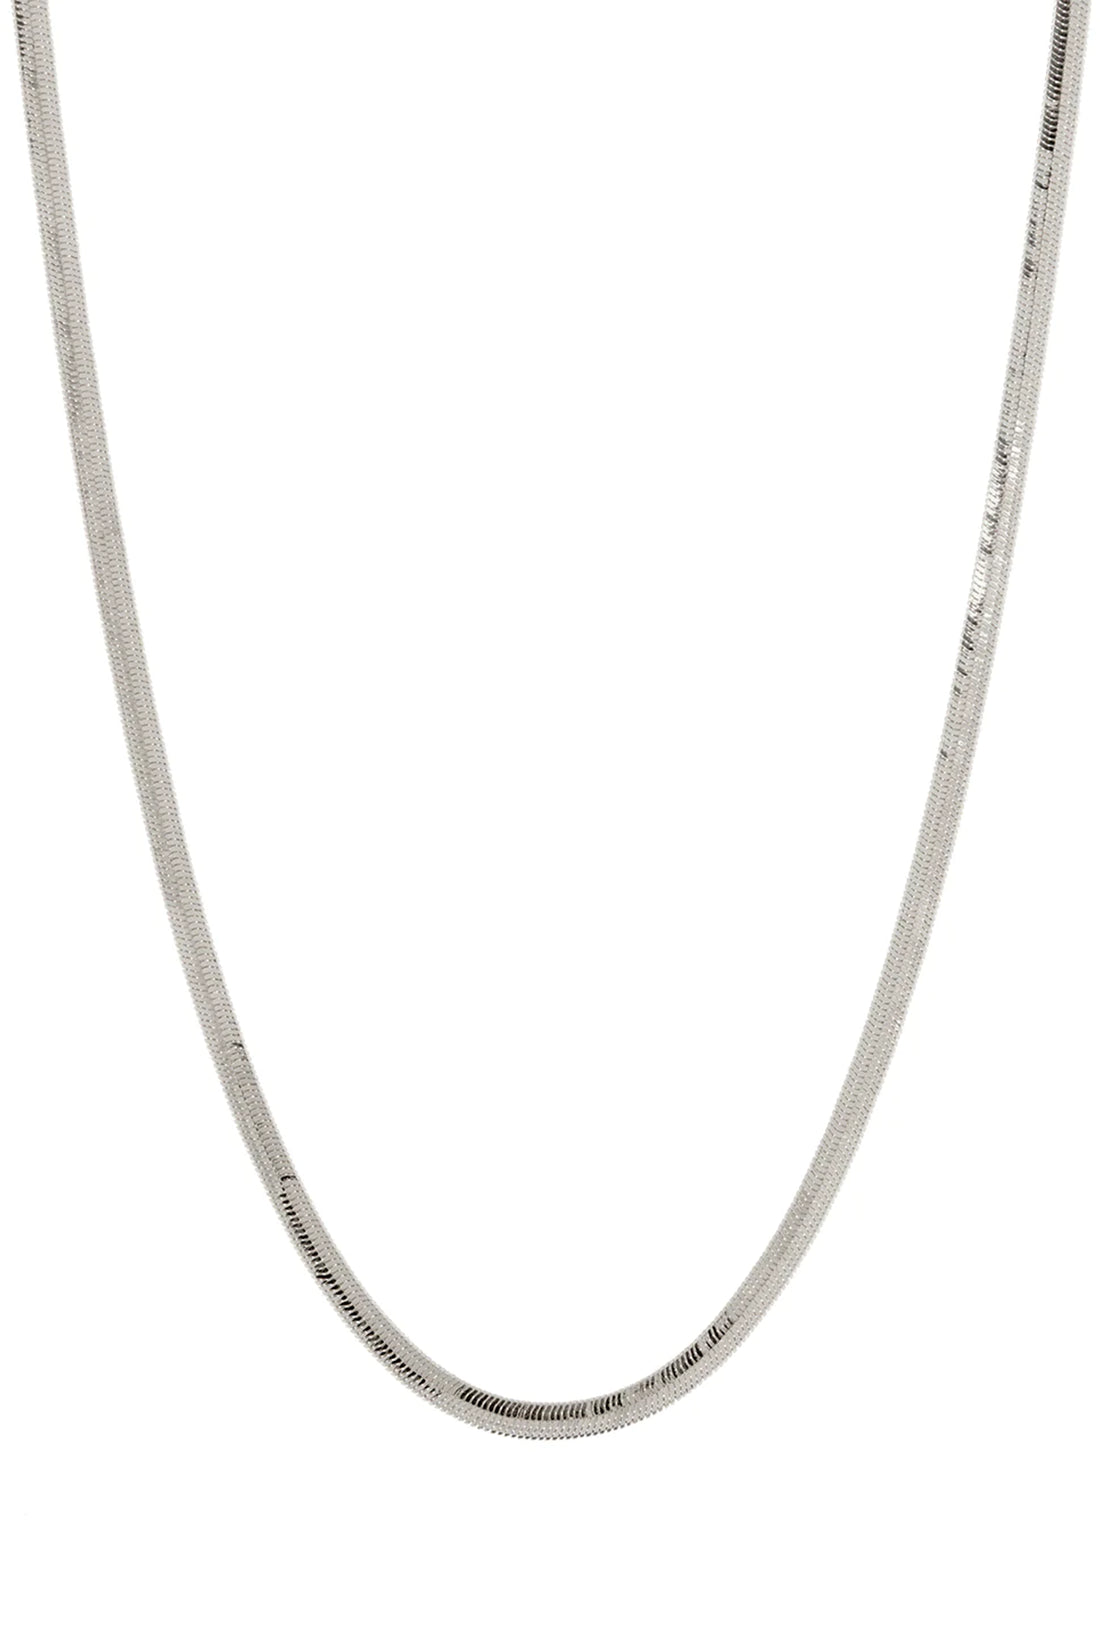 The Classique Herringbone Chain - Silver